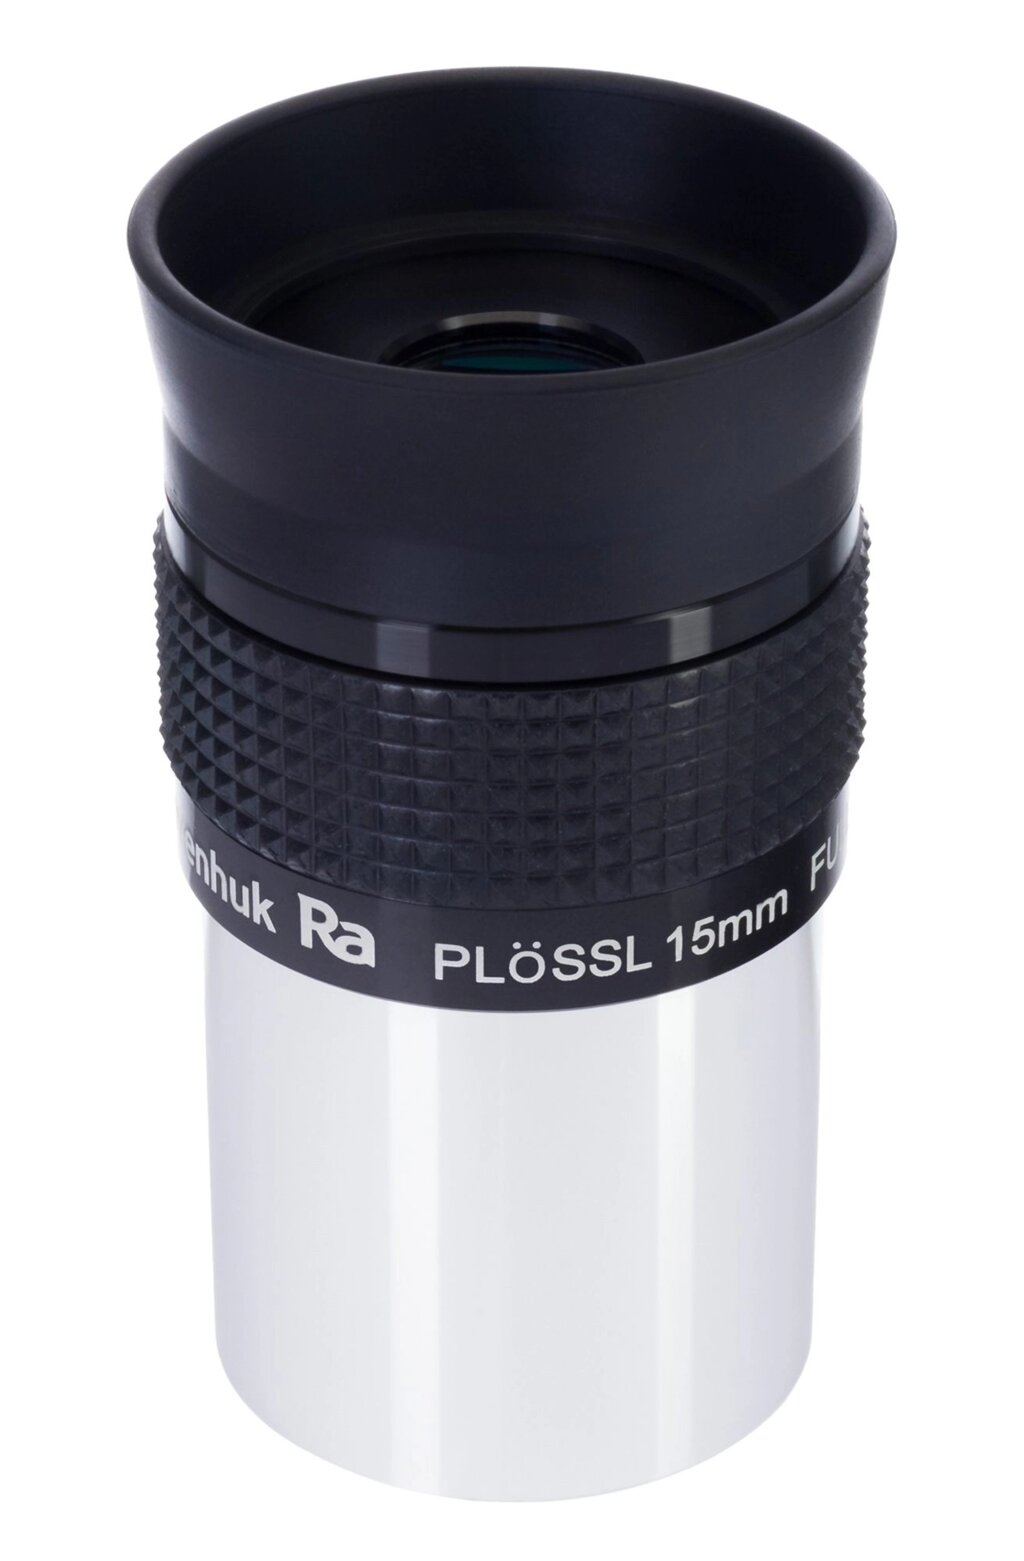 Окуляр Levenhuk Plössl 15 мм, 1,25" от компании ООО "АССЕРВИС" лабораторное оборудование и весы по низким ценам. - фото 1